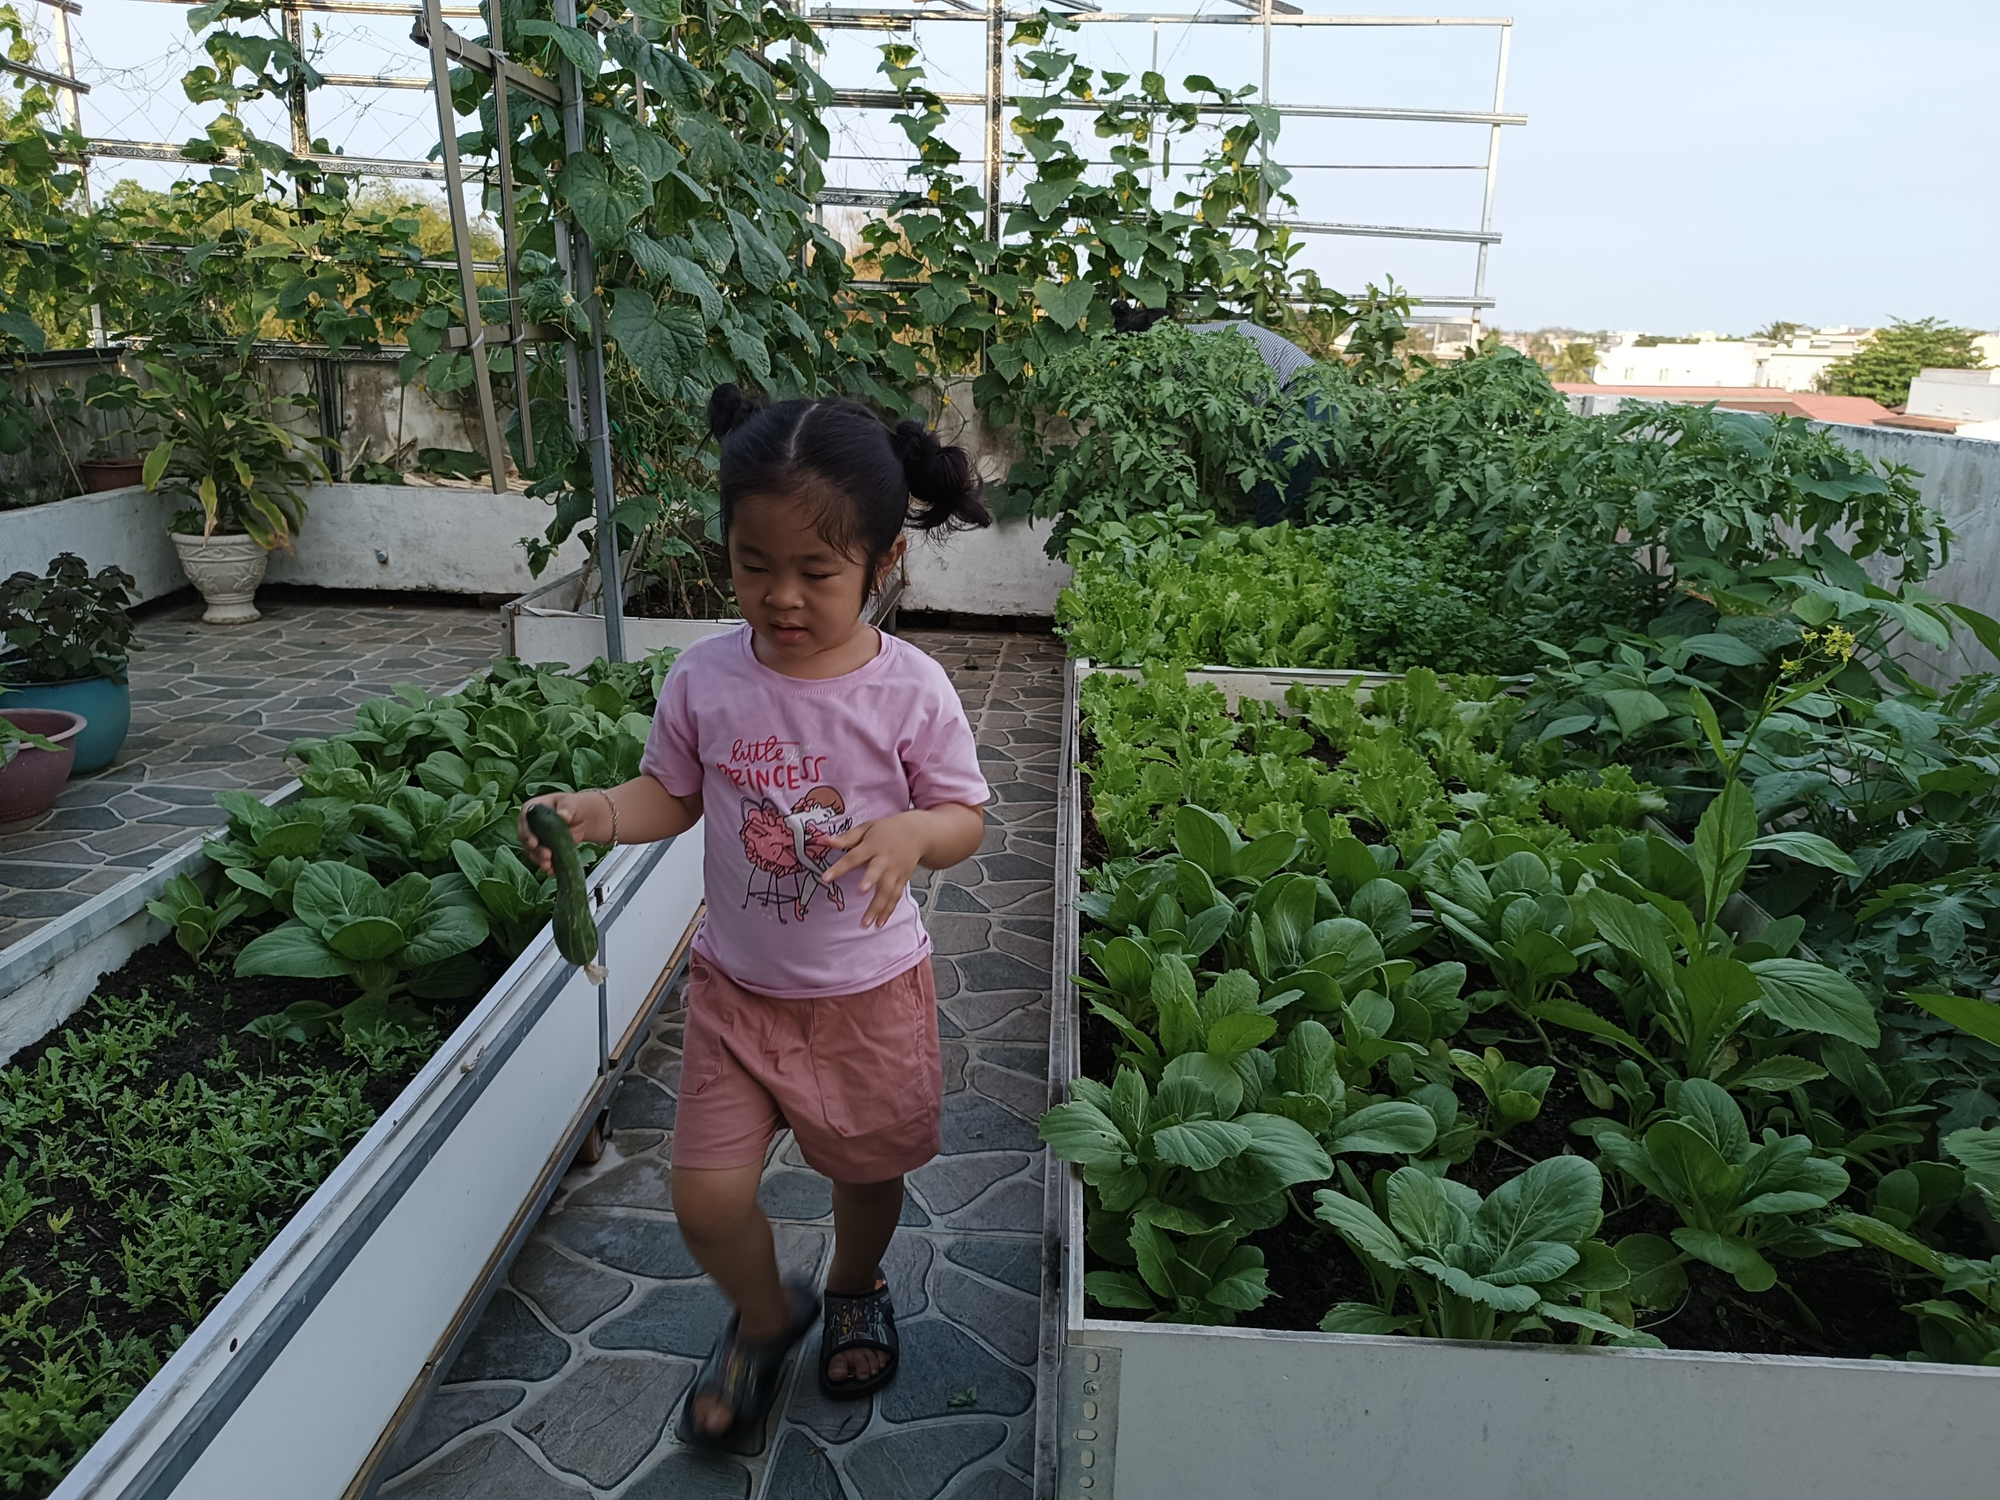 Khu vườn sân thượng 70m2 trĩu nặng rau quả từ căn nhà phố ở Bình Thuận - Ảnh 5.